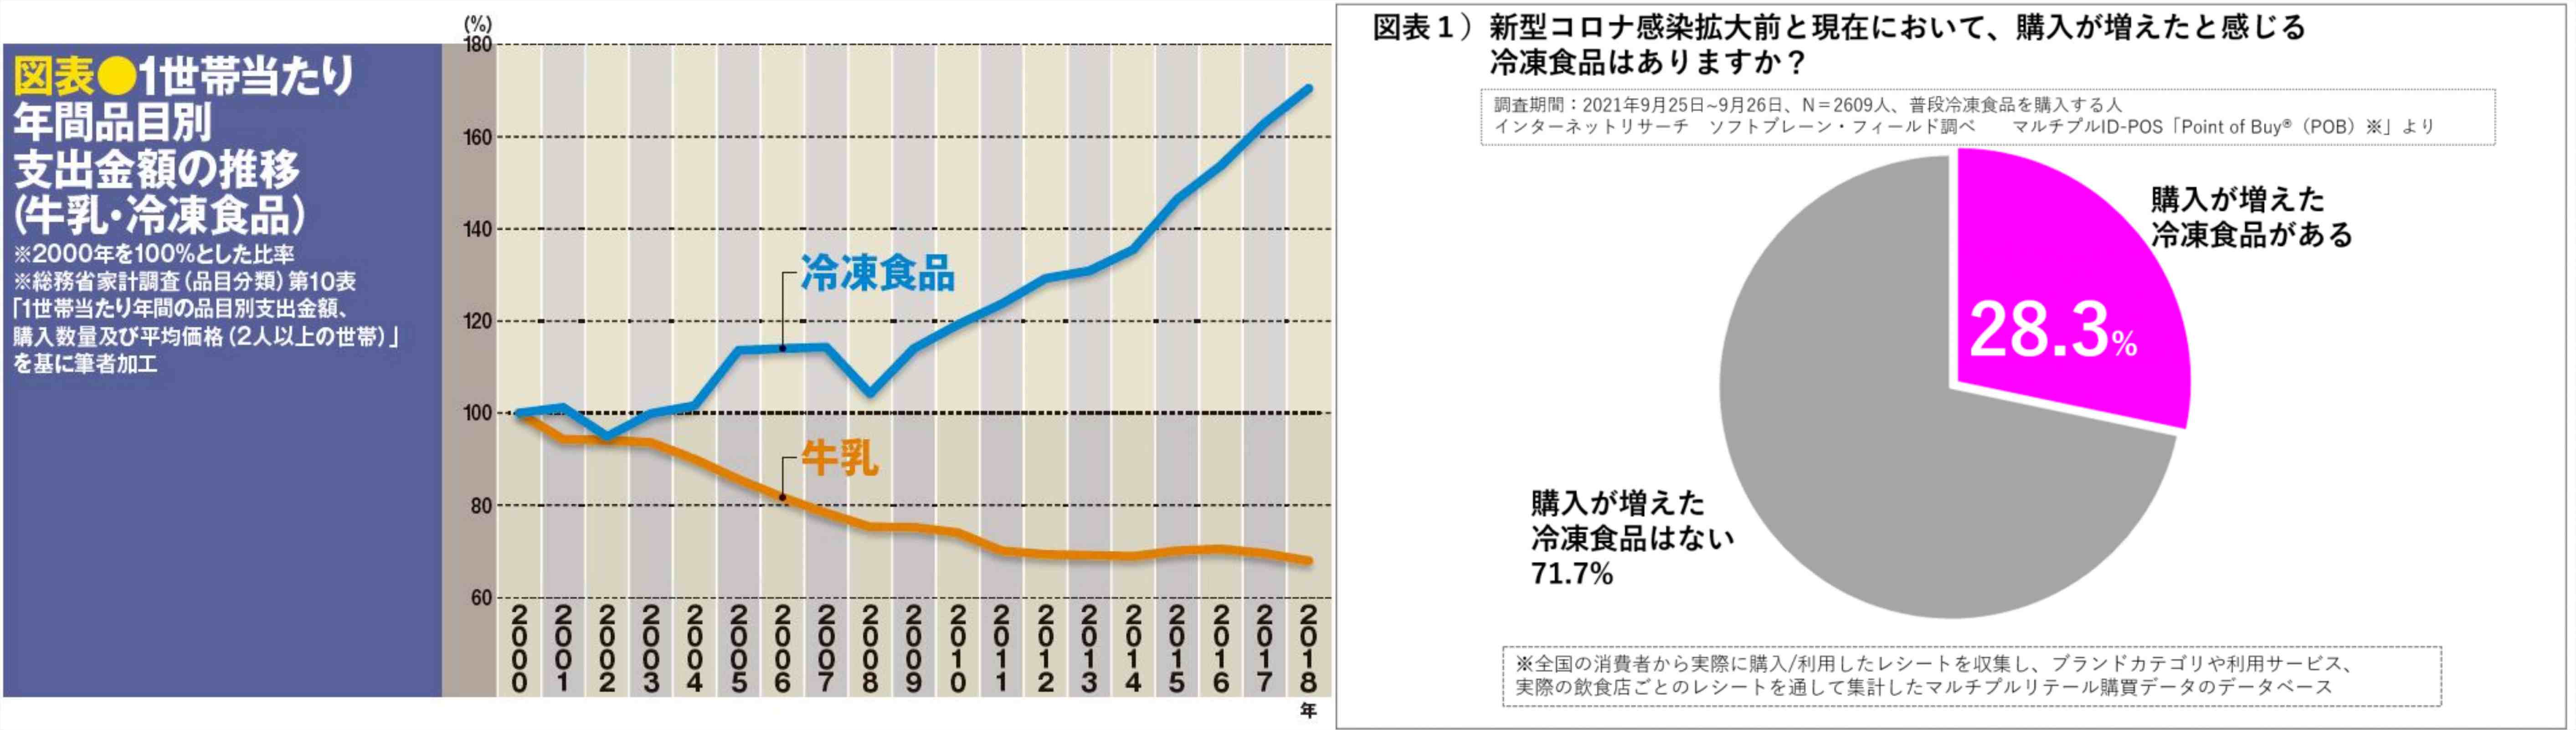 근래 일본에서도 우유 소비량은 계속 줄지만 냉동 식품 구매 빈도는 점점 늘어나고 있어요(左) 코로나 이후 냉동 식품 구입 횟수가 늘어났다고 답한 이가 28.3%였어요.